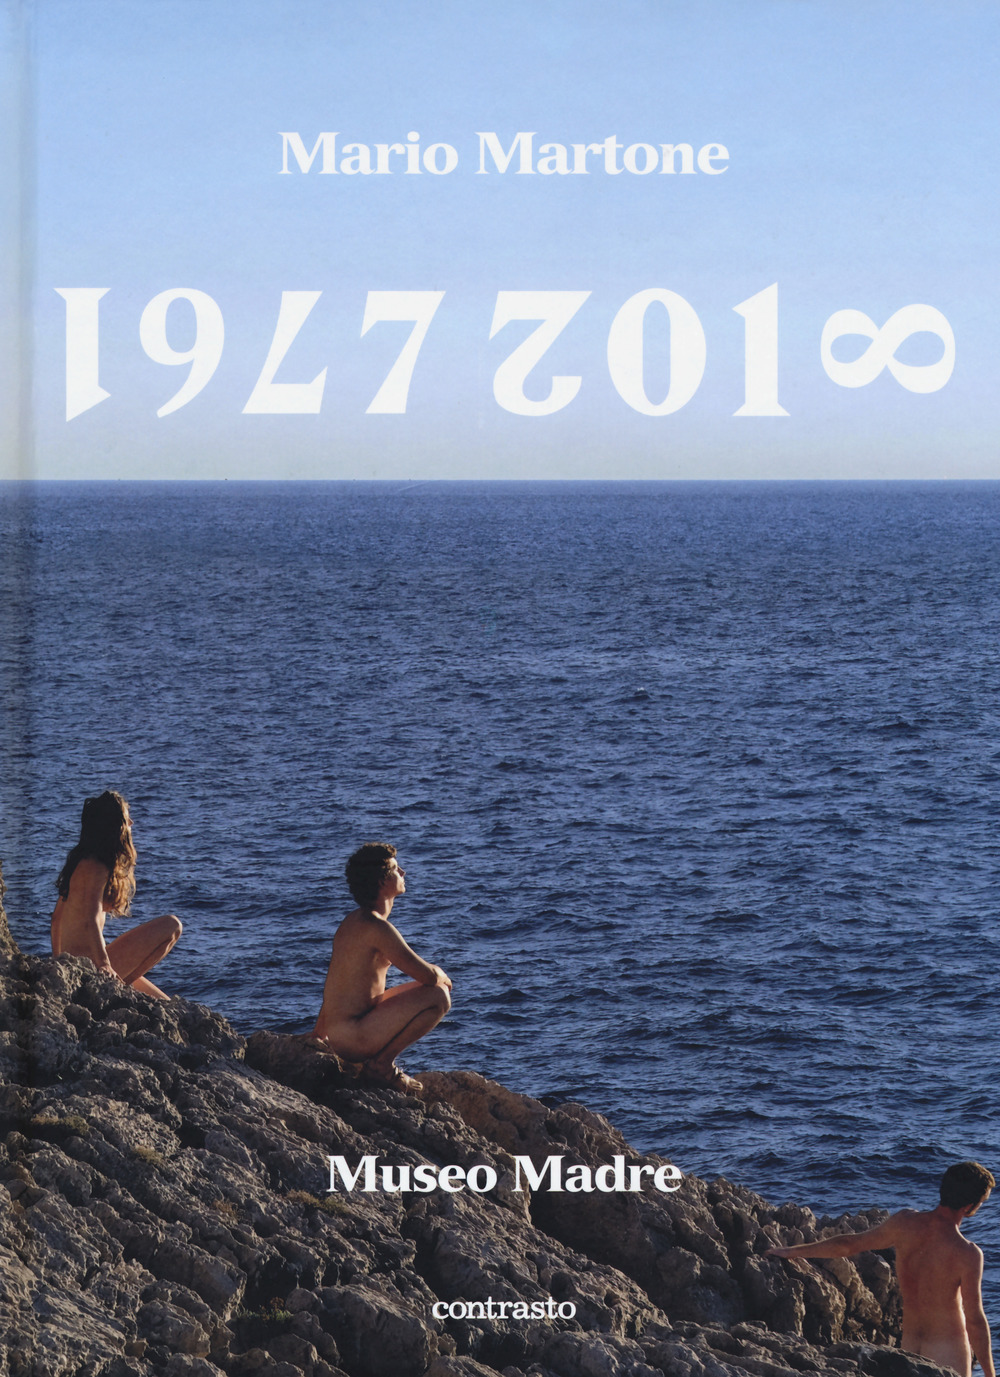 Mario Martone. 1977-2018 Museo Madre. Catalogo della mostra (Napoli, 1 giugno-8 ottobre 2018). Ediz. inglese